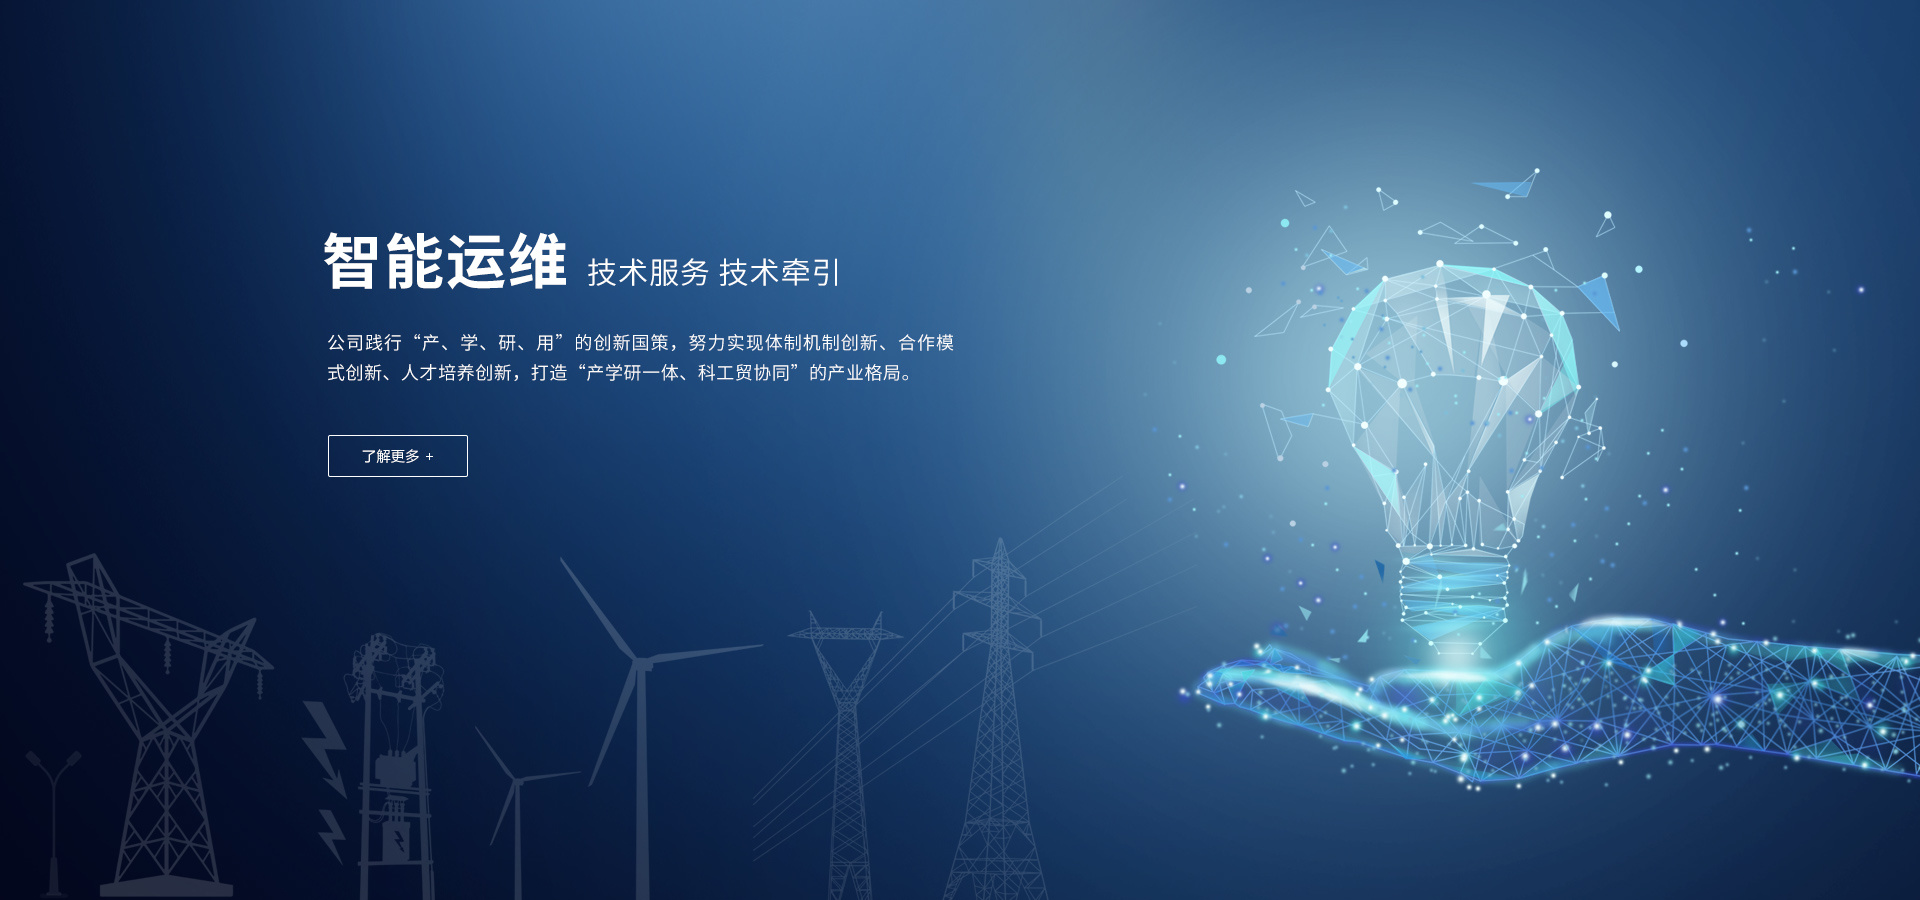 武汉黉门电工科技有限公司